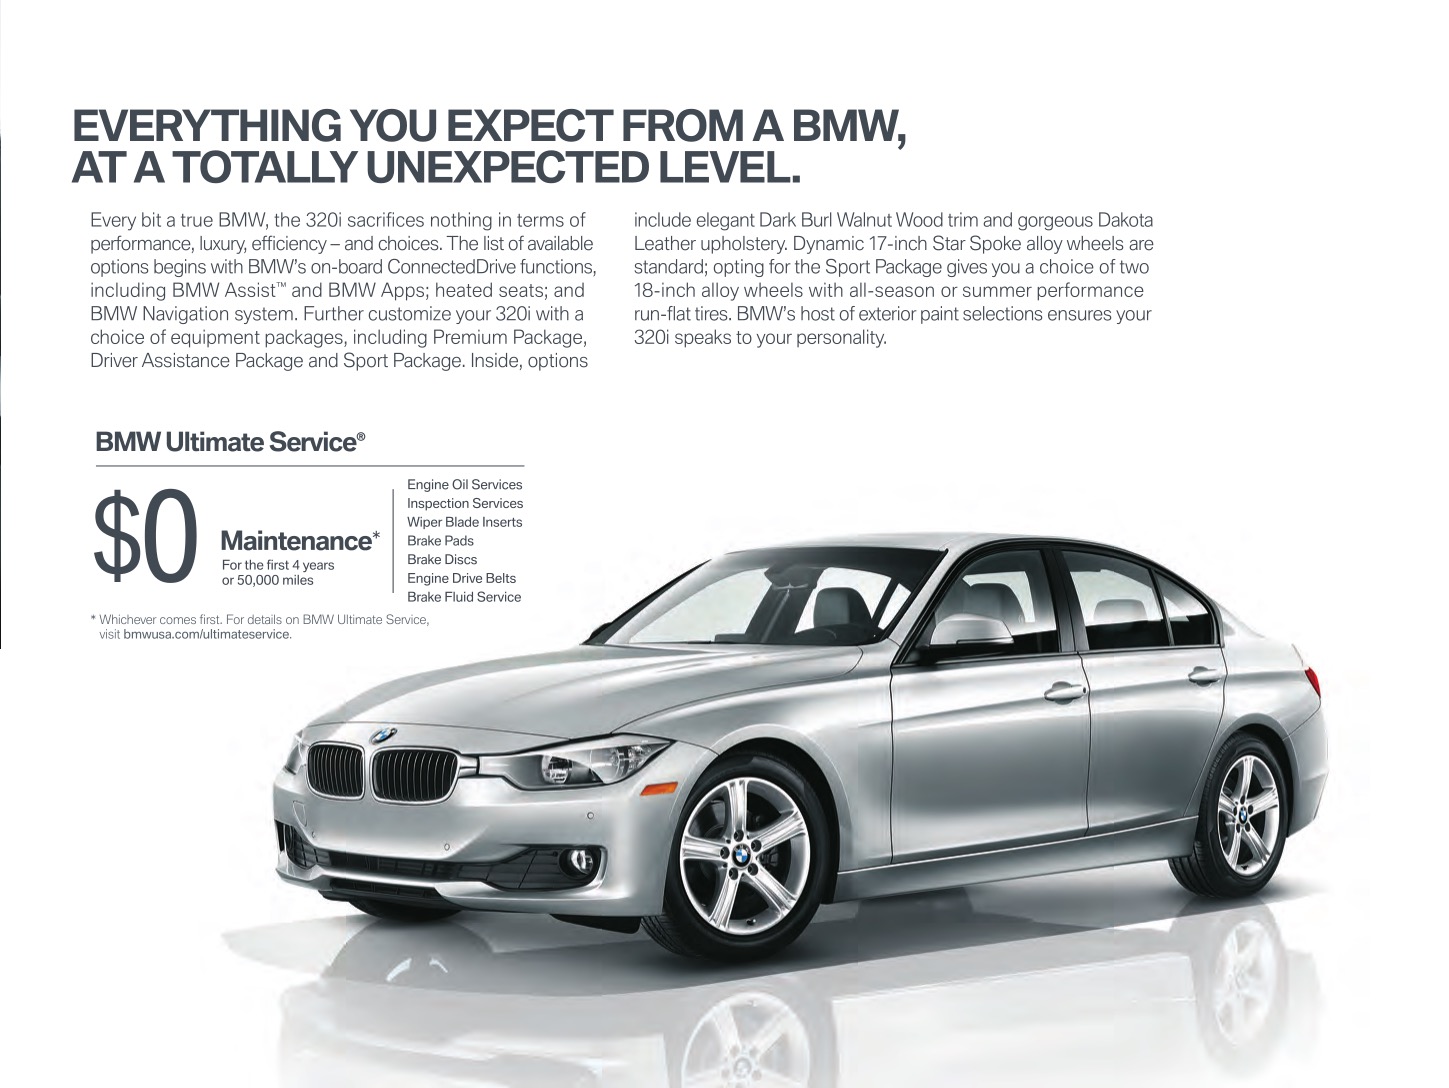 2013 BMW 3-Series Sedan Brochure Page 3